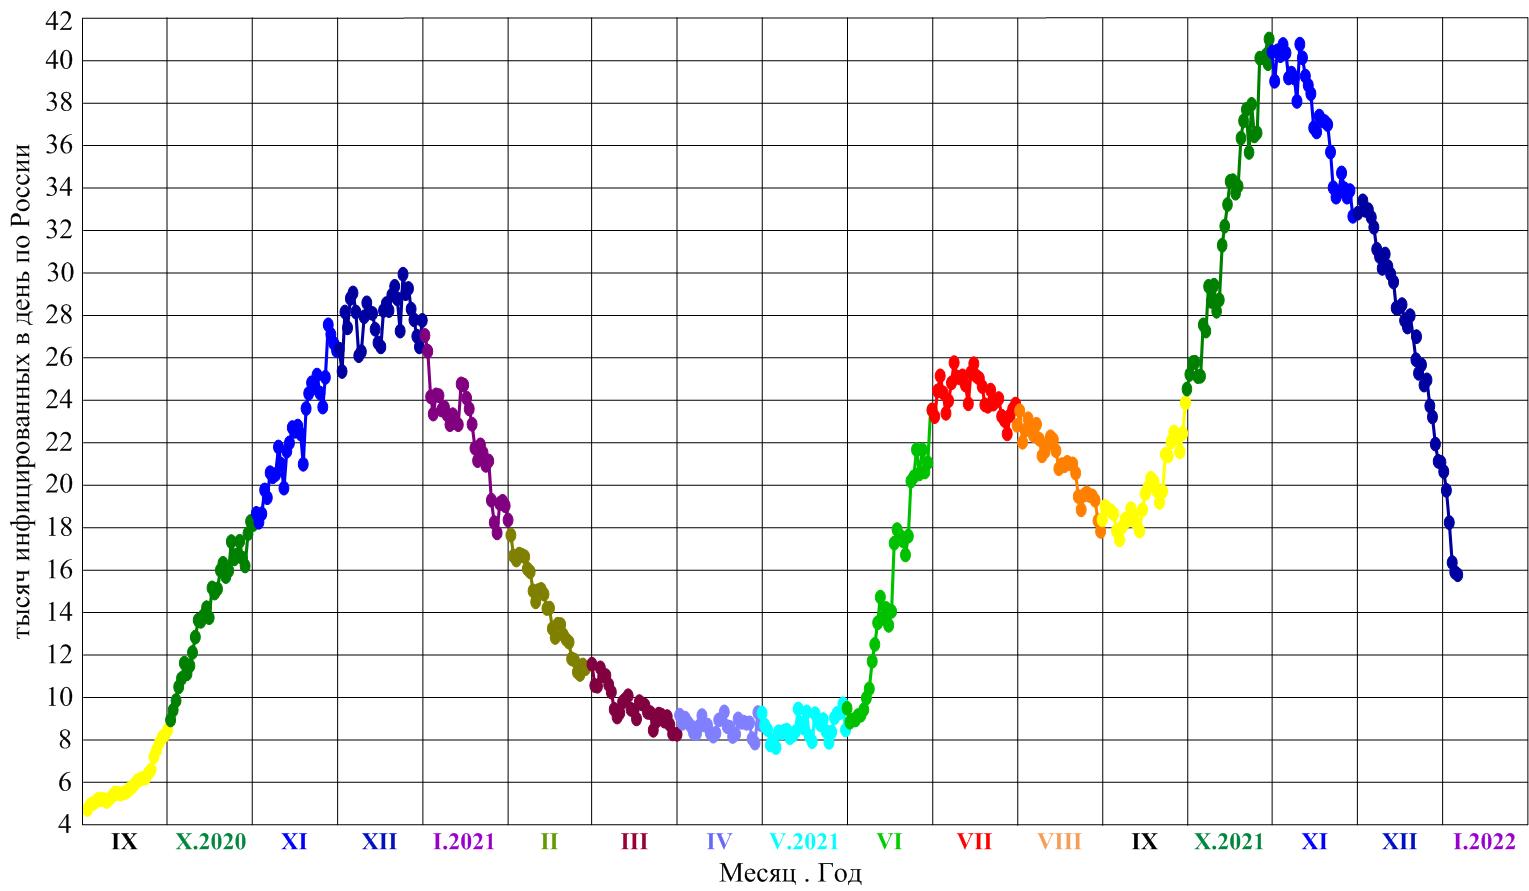 разные цвета линий и точек на графике соответствуют разным месяцам